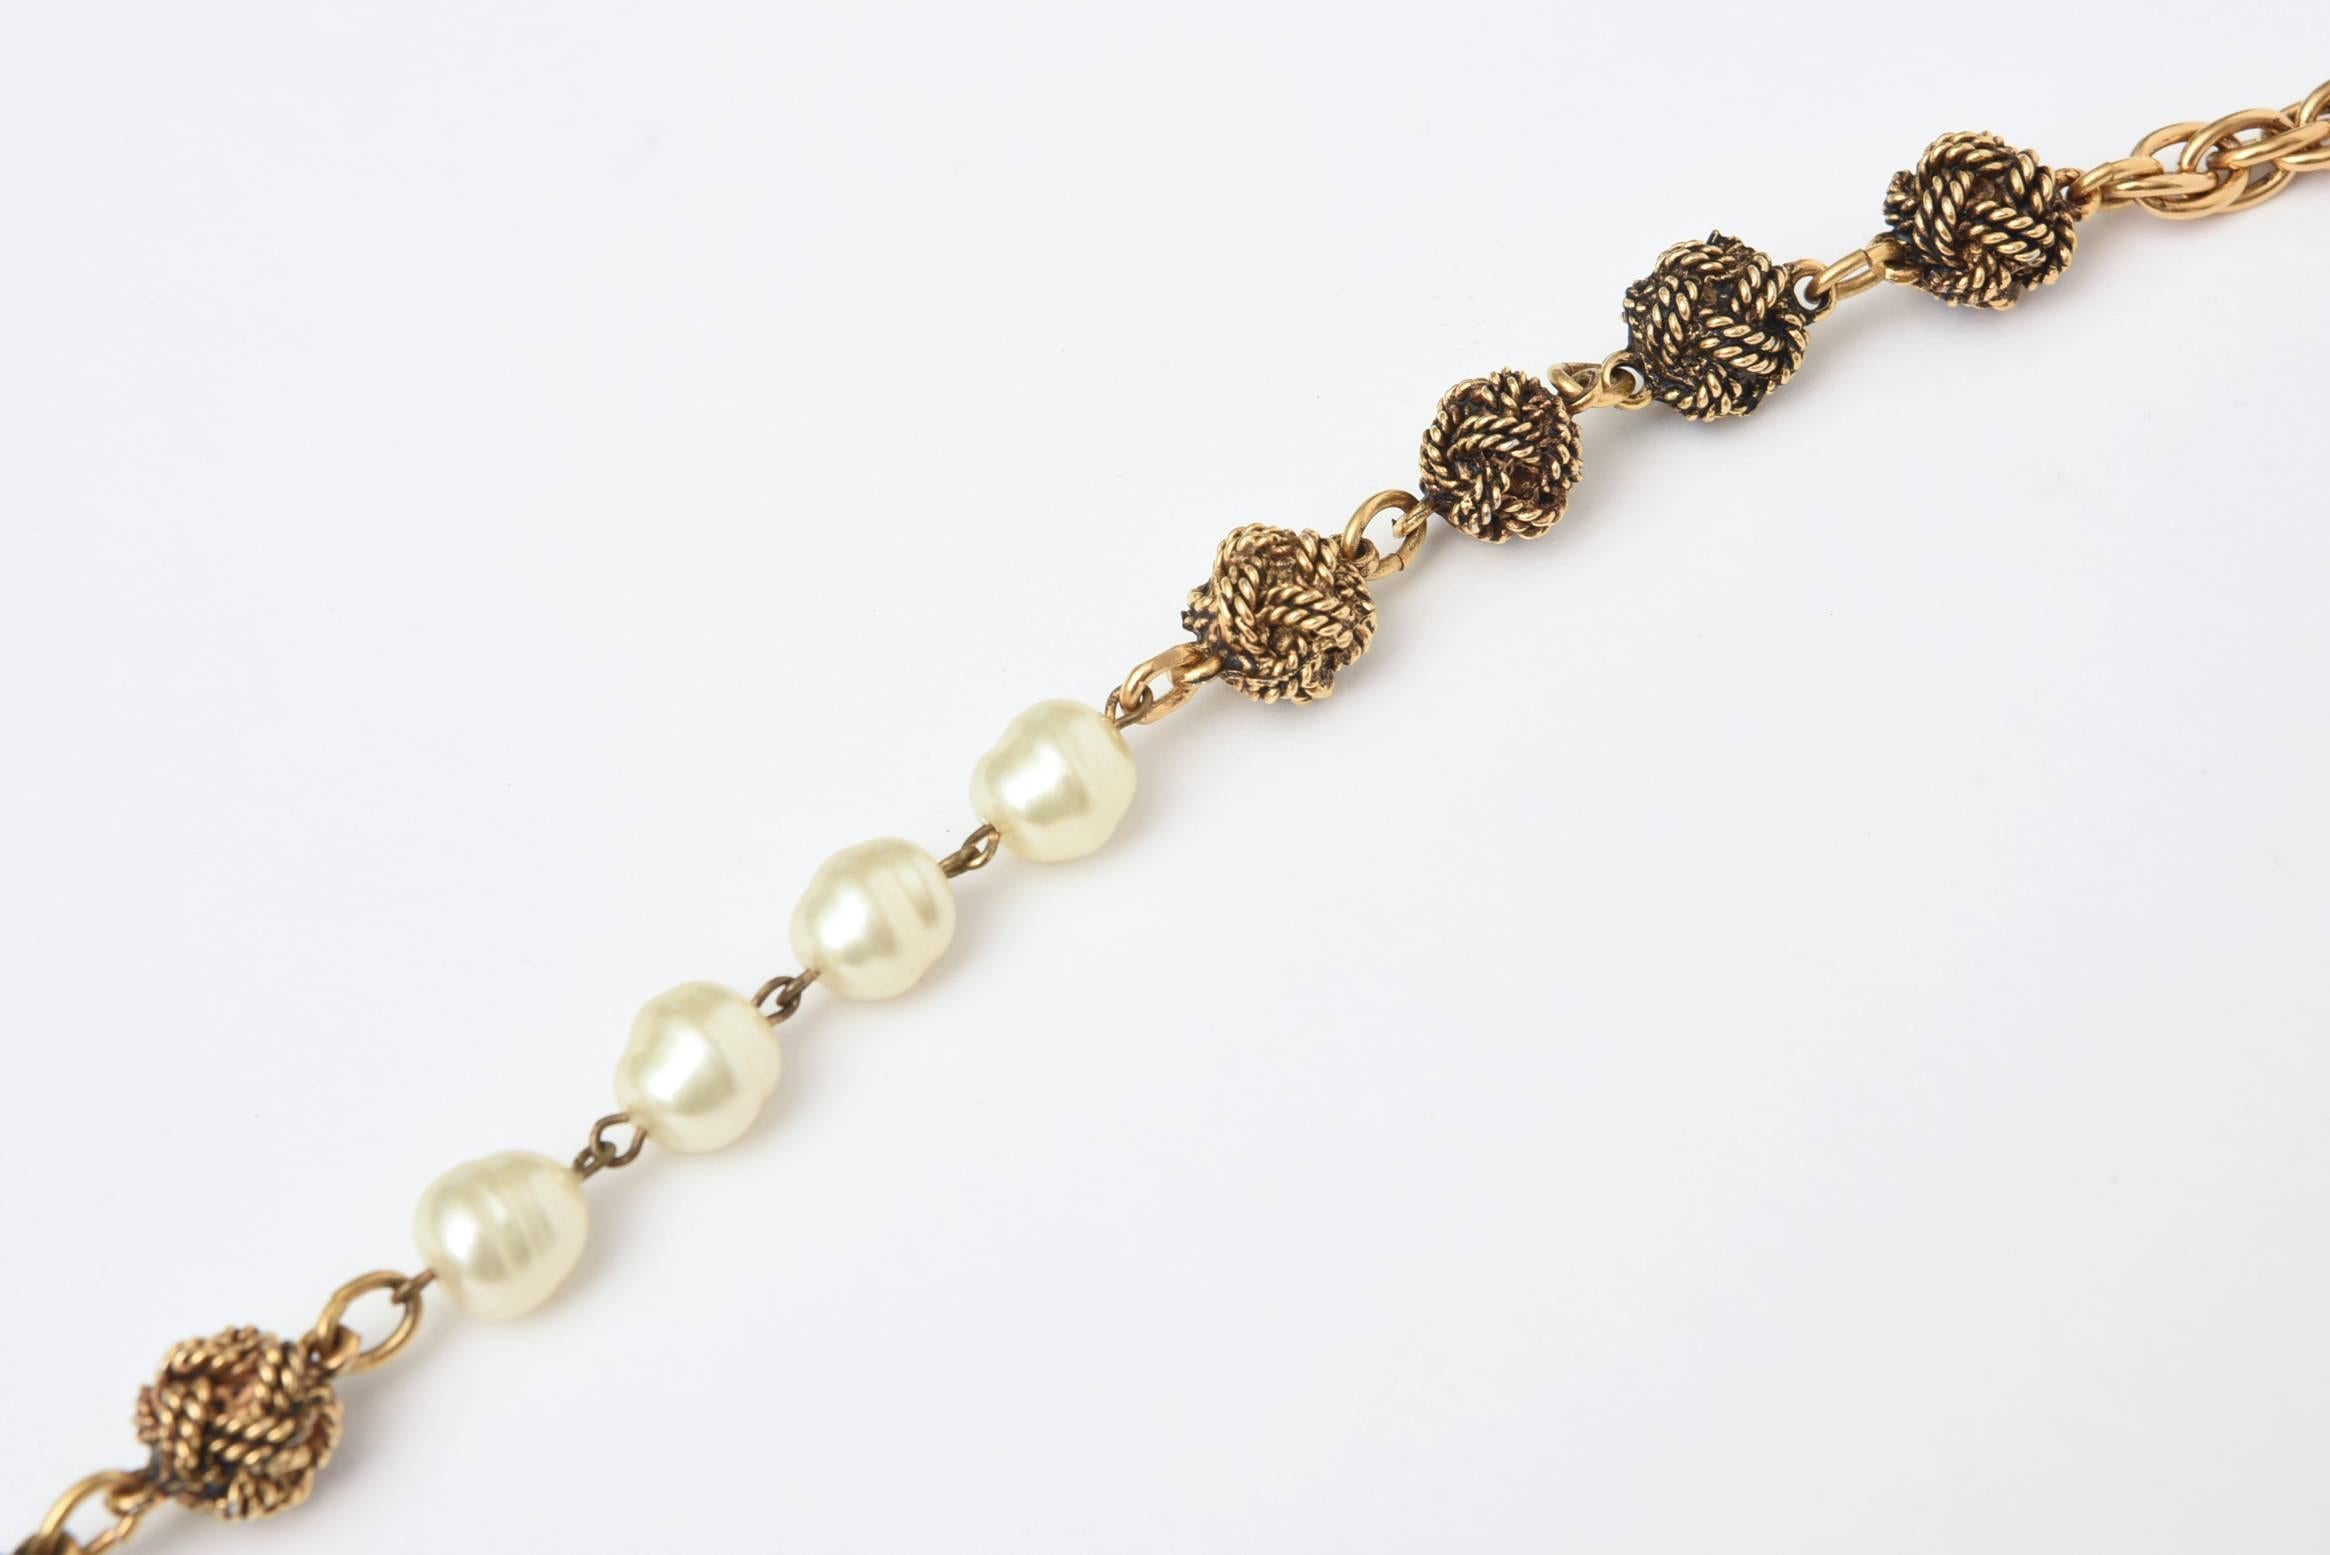 Diese klassische und immerwährende lange Chanel-Halskette hat Knoten in einem dunkleren, vergoldeten Metall mit einem helleren, vergoldeten Metallglied, das mit goldfarbenen Liebesknotenstationen durchsetzt ist, die mit Chanel-Perlen und -Ketten aus